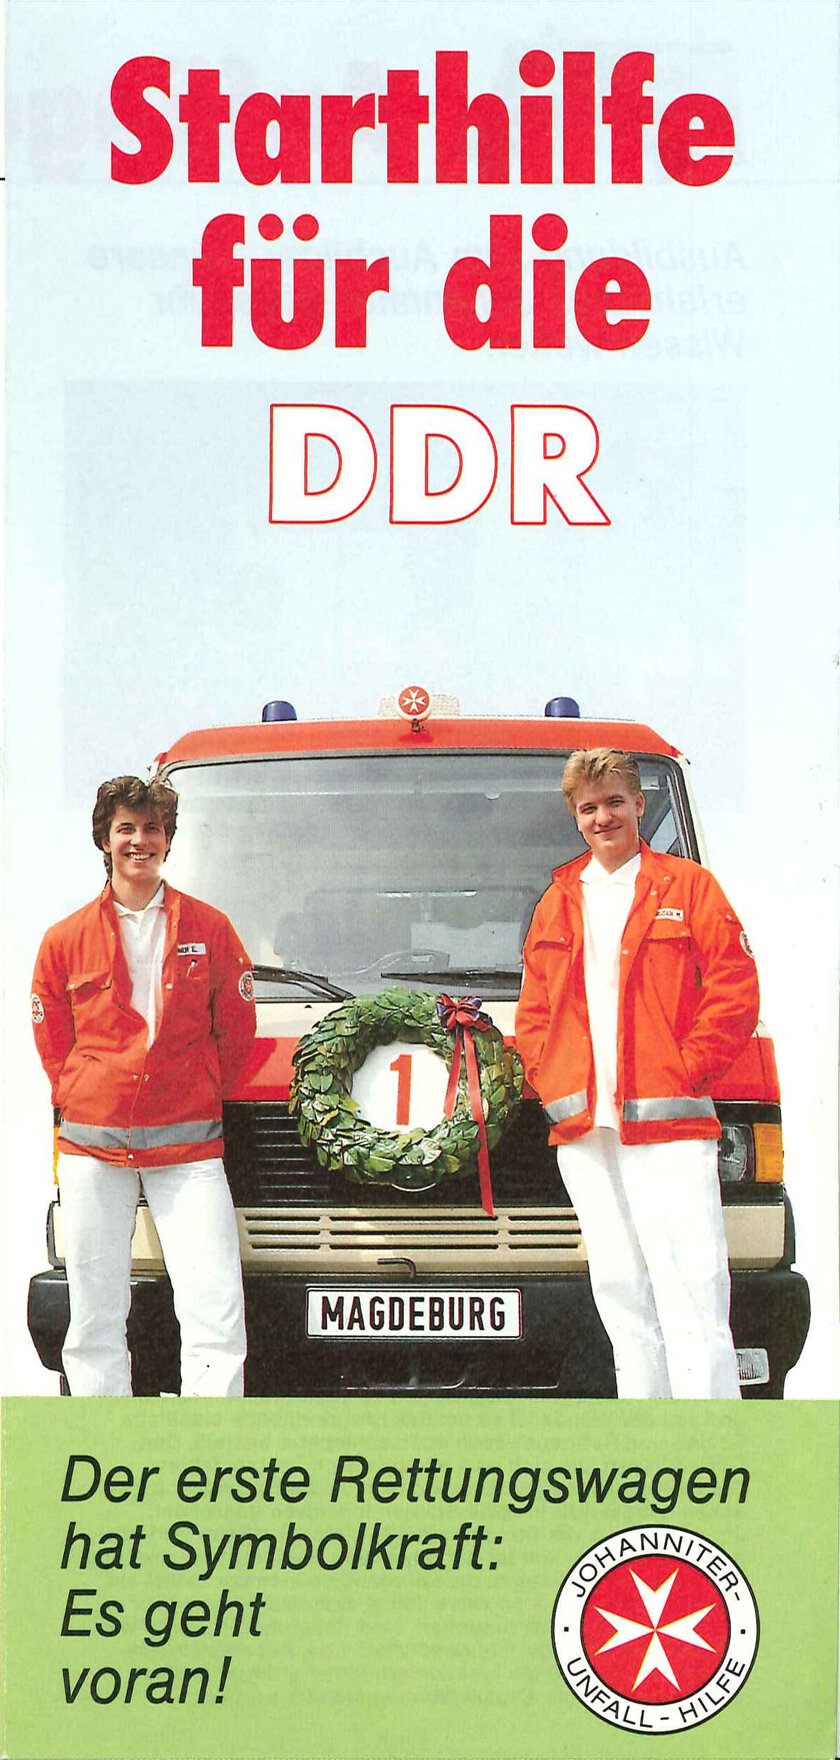 Starthilfe der Johanniter für die DDR im Jahr 1990.